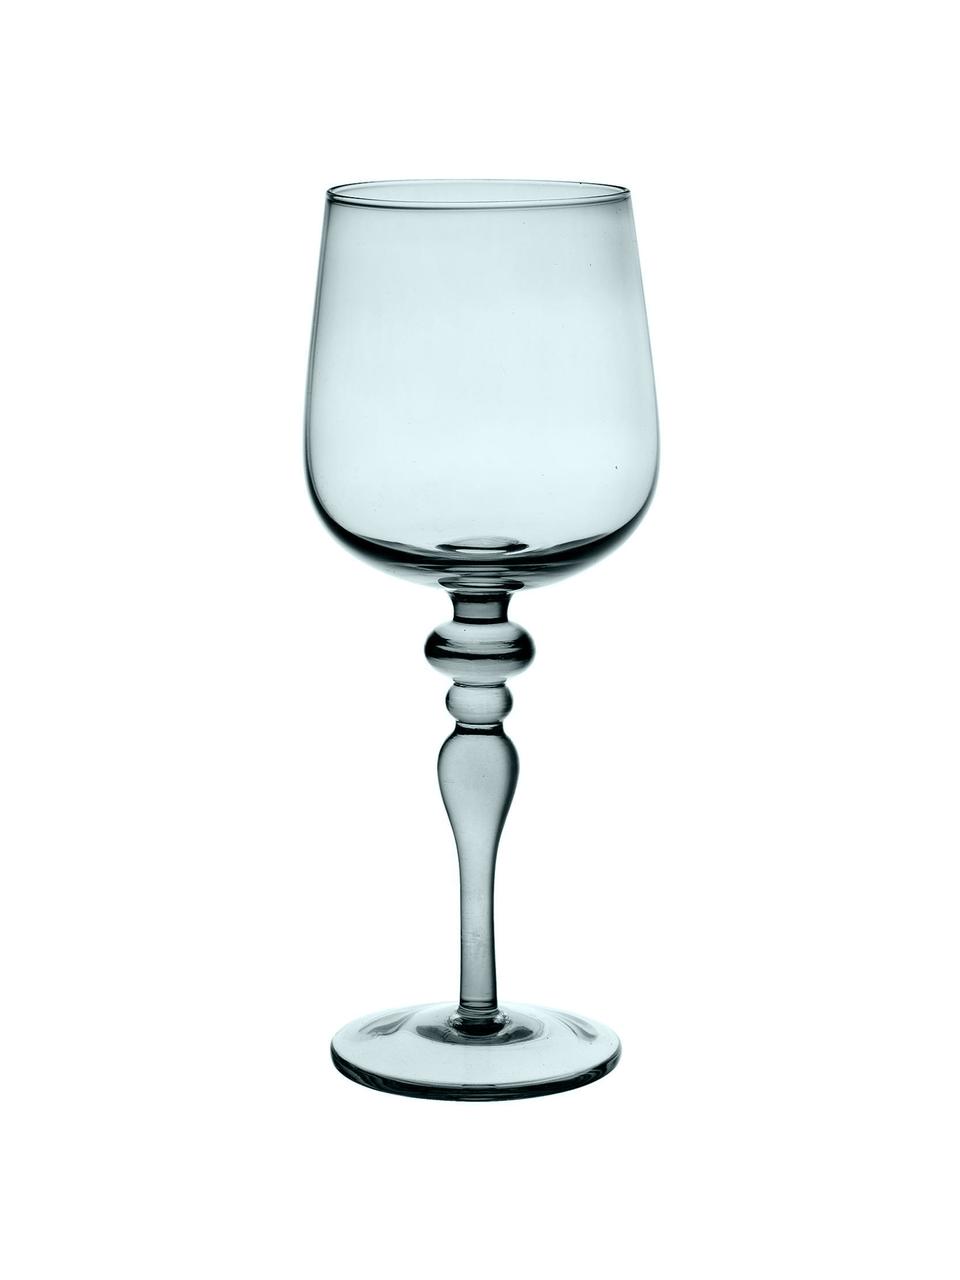 Mundgeblasene Weingläser Diseguale in unterschiedlichen Farben und Formen, 6er-Set, Glas, mundgeblasen, Grüntöne, Blautöne, Ø 8 x H 20 cm, 200 ml